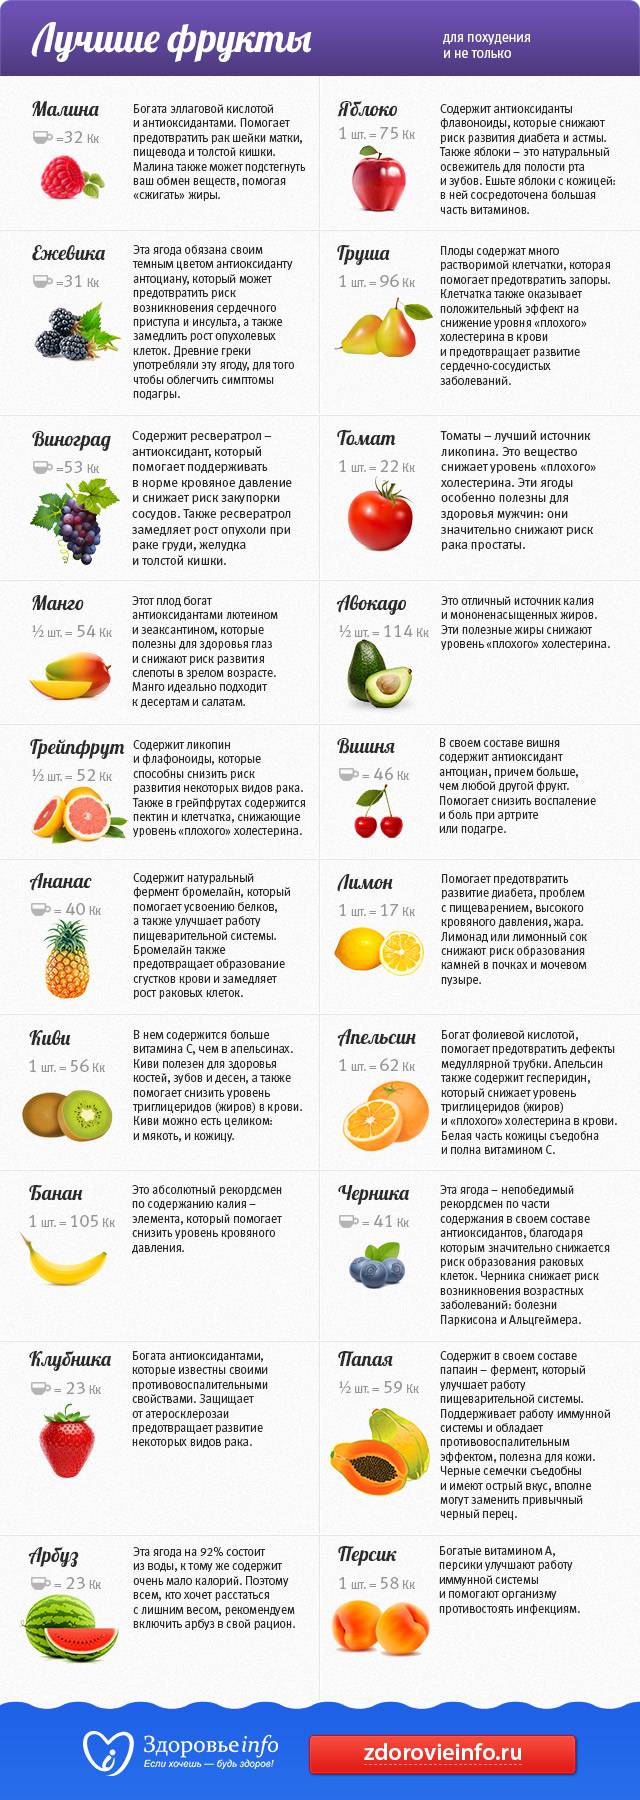 Какие фрукты можно есть при похудении, а какие нельзя